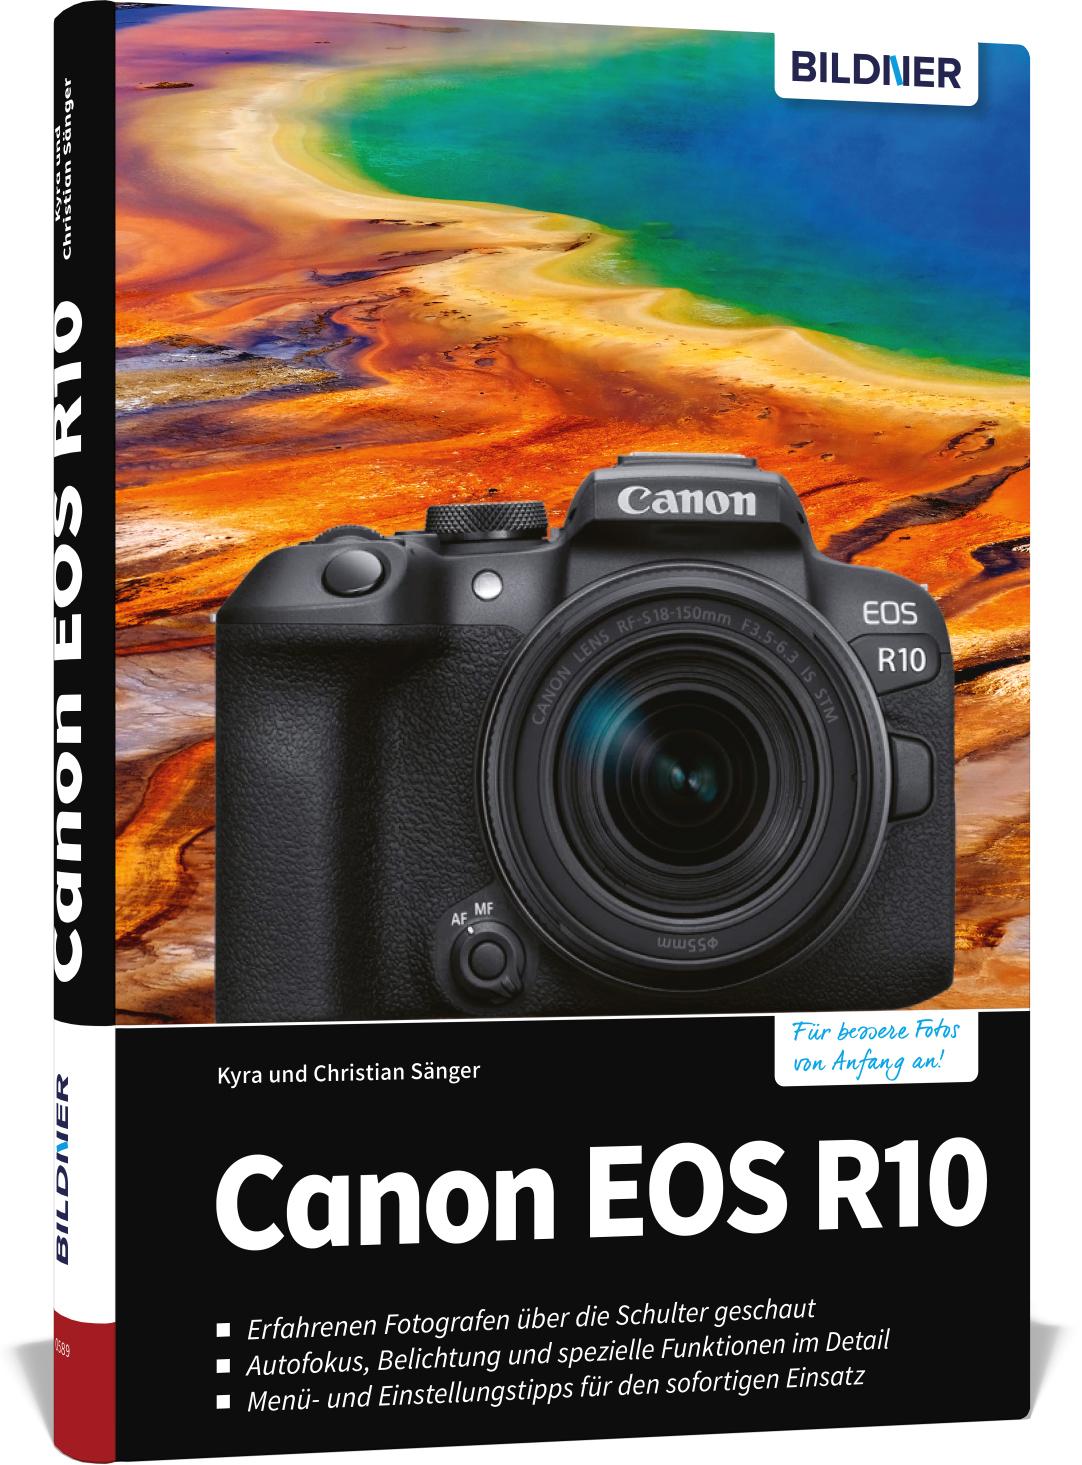 Canon EOS R10 Das umfangreiche Praxisbuch zu Ihrer Kamera!